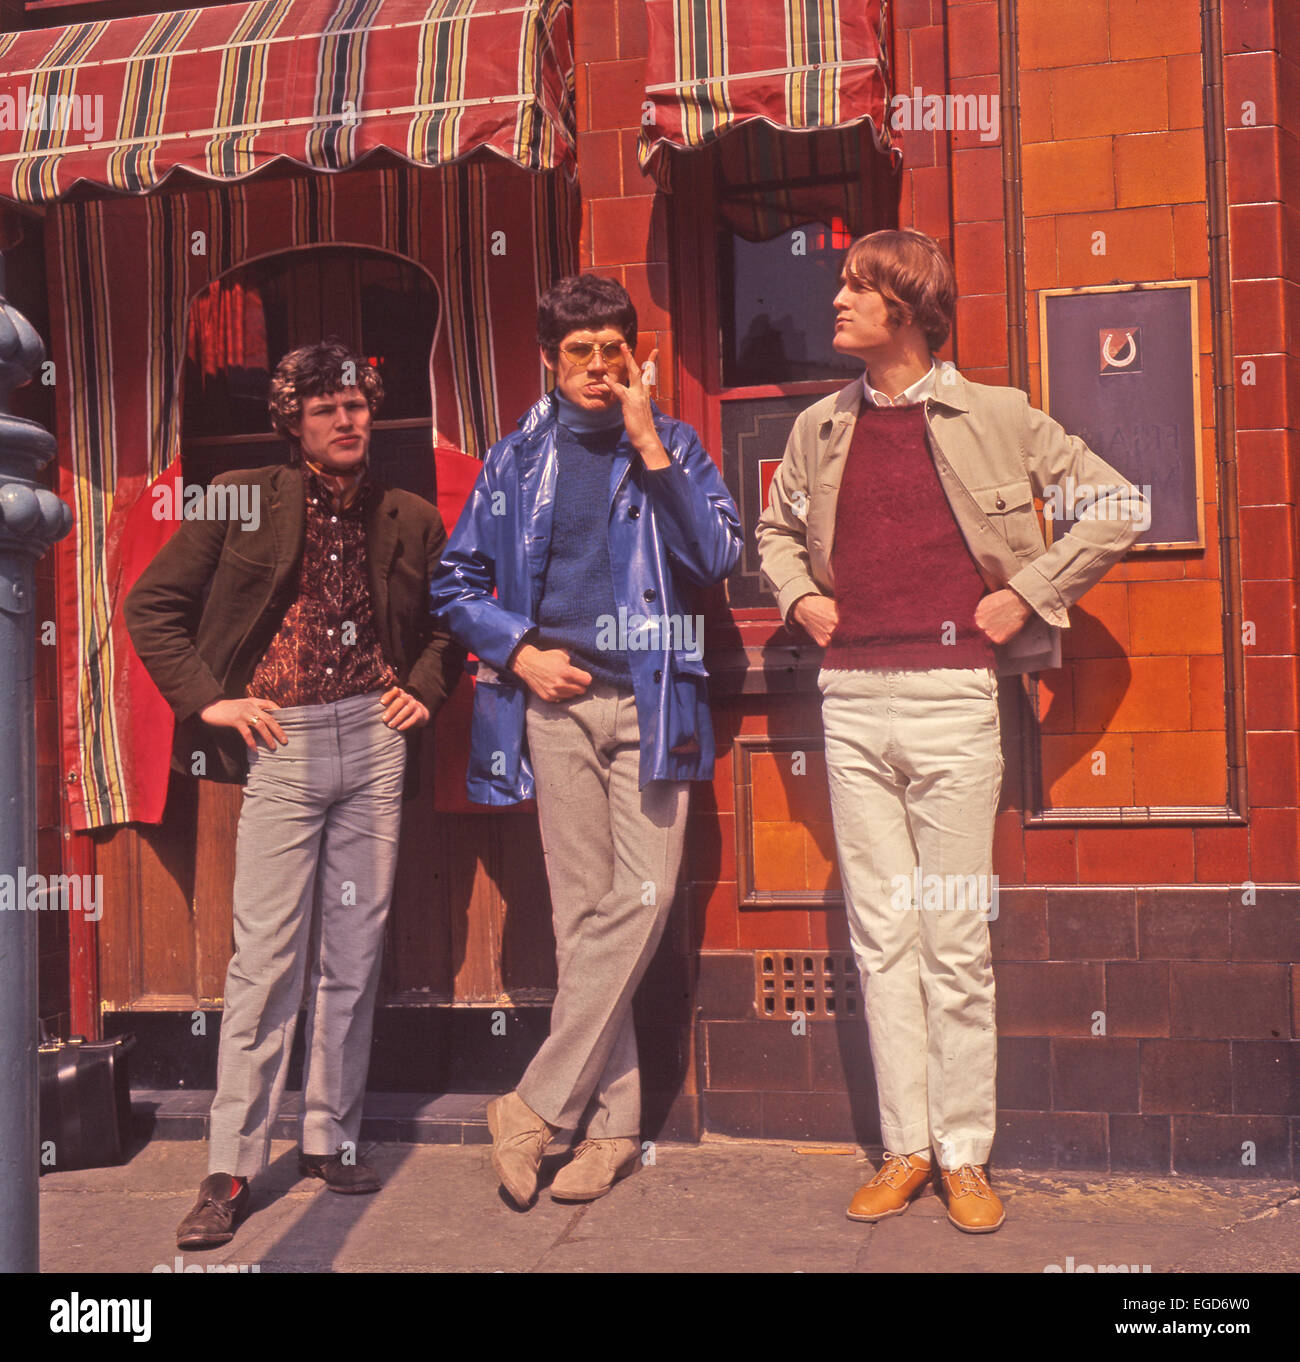 WARME Töne UK-pop-Gruppe im Jahr 1967. Nachschlagewerke erwähnen nur die Gruppe mit zwei Mitgliedern, aber in dieser Sitzung gab es drei. Stockfoto